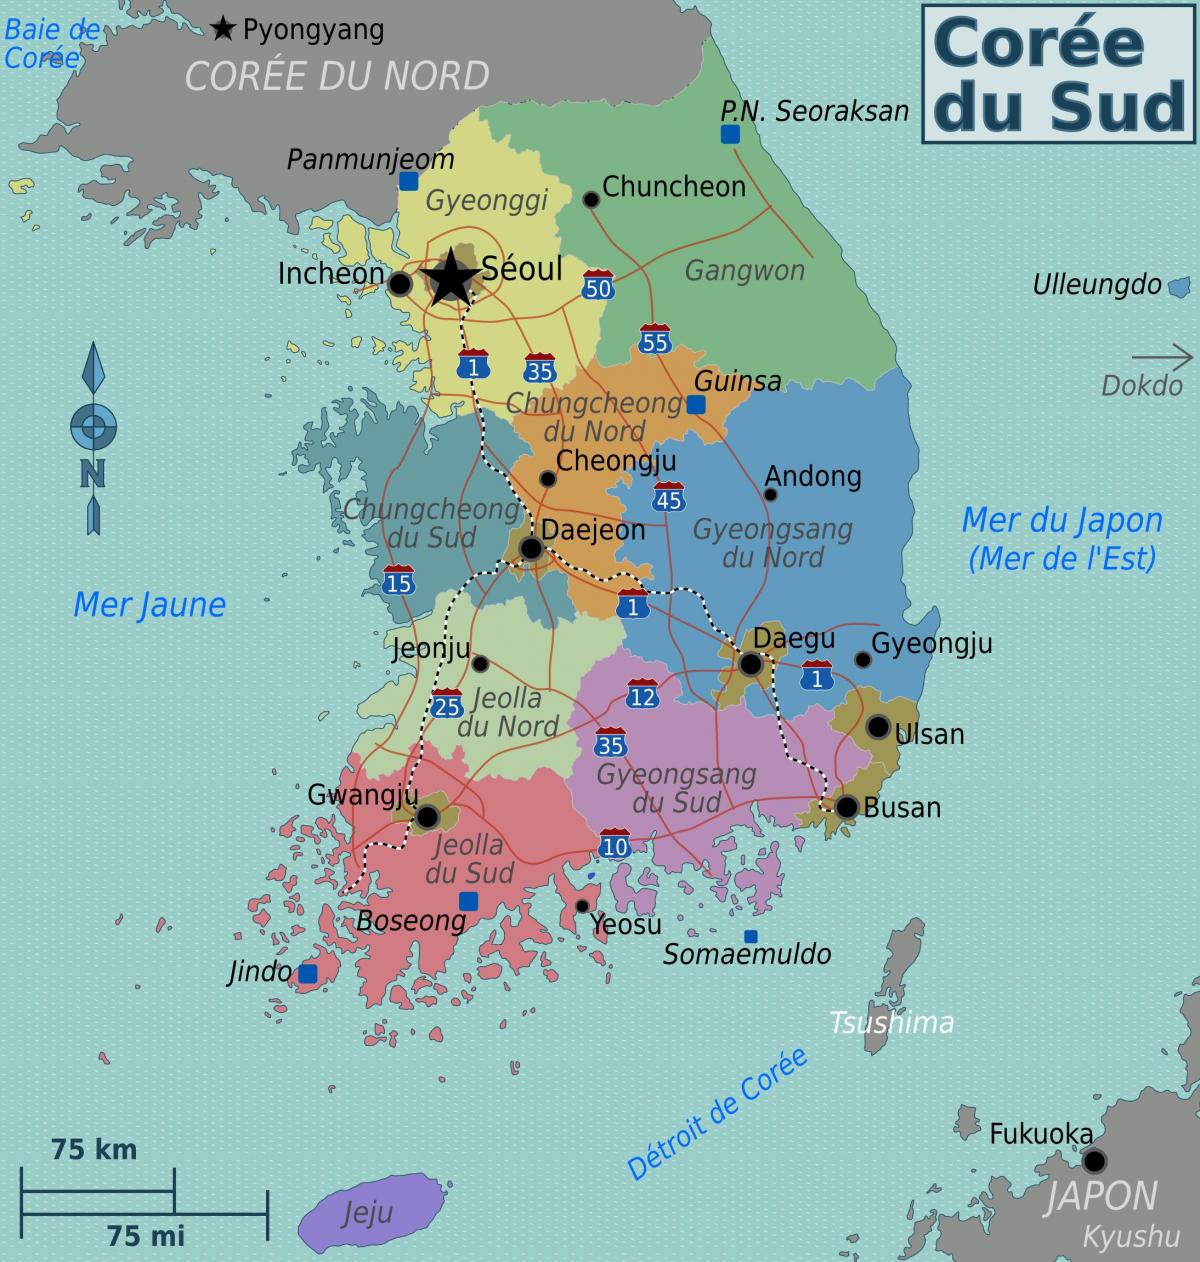 Mapa das áreas da Coreia do Sul (ROK)